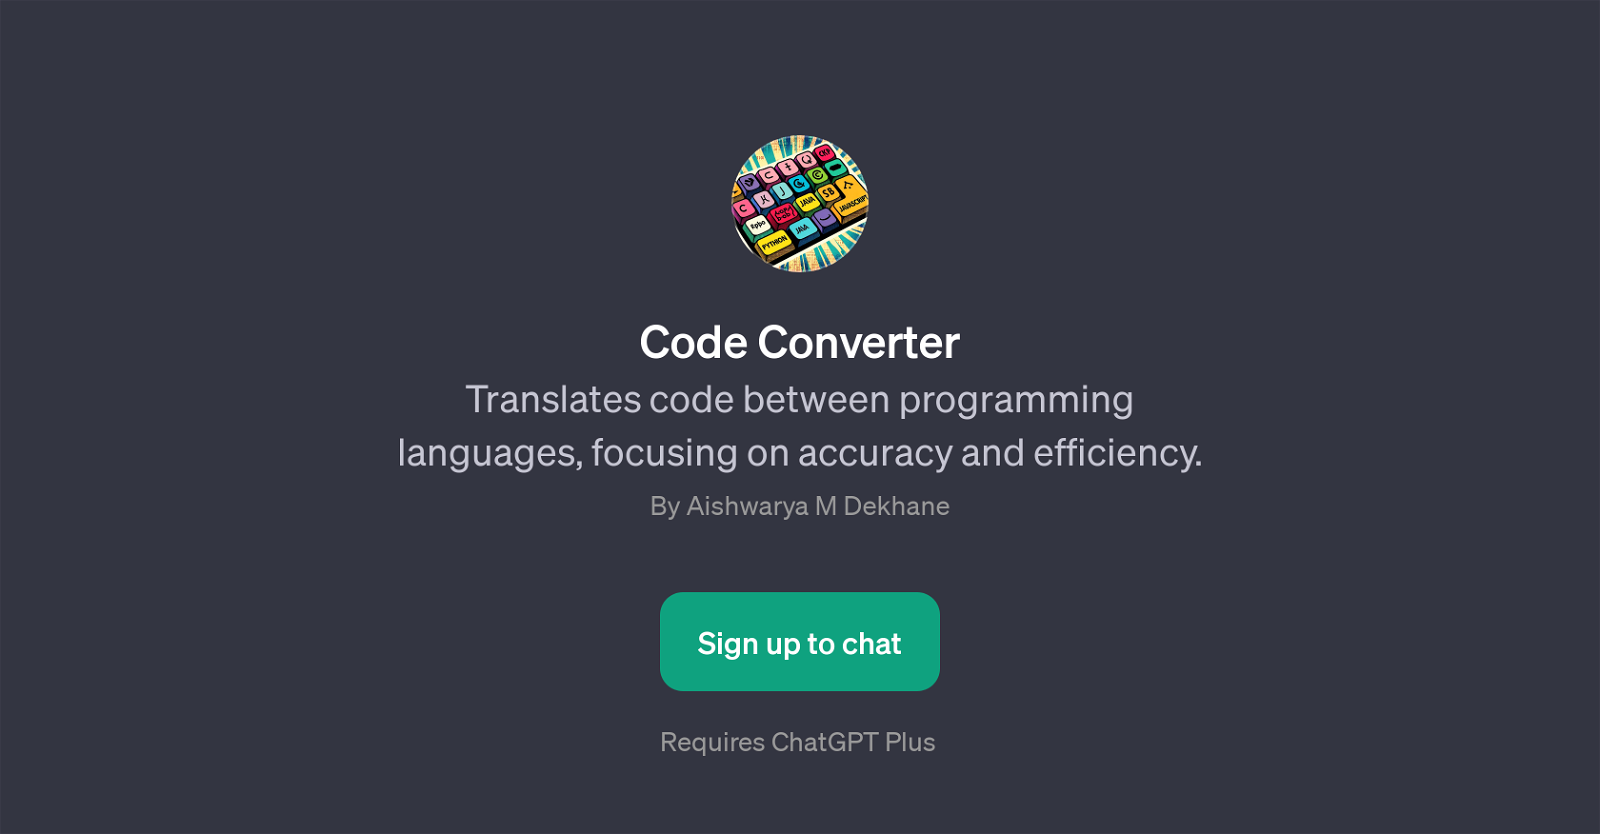 Code Converter website